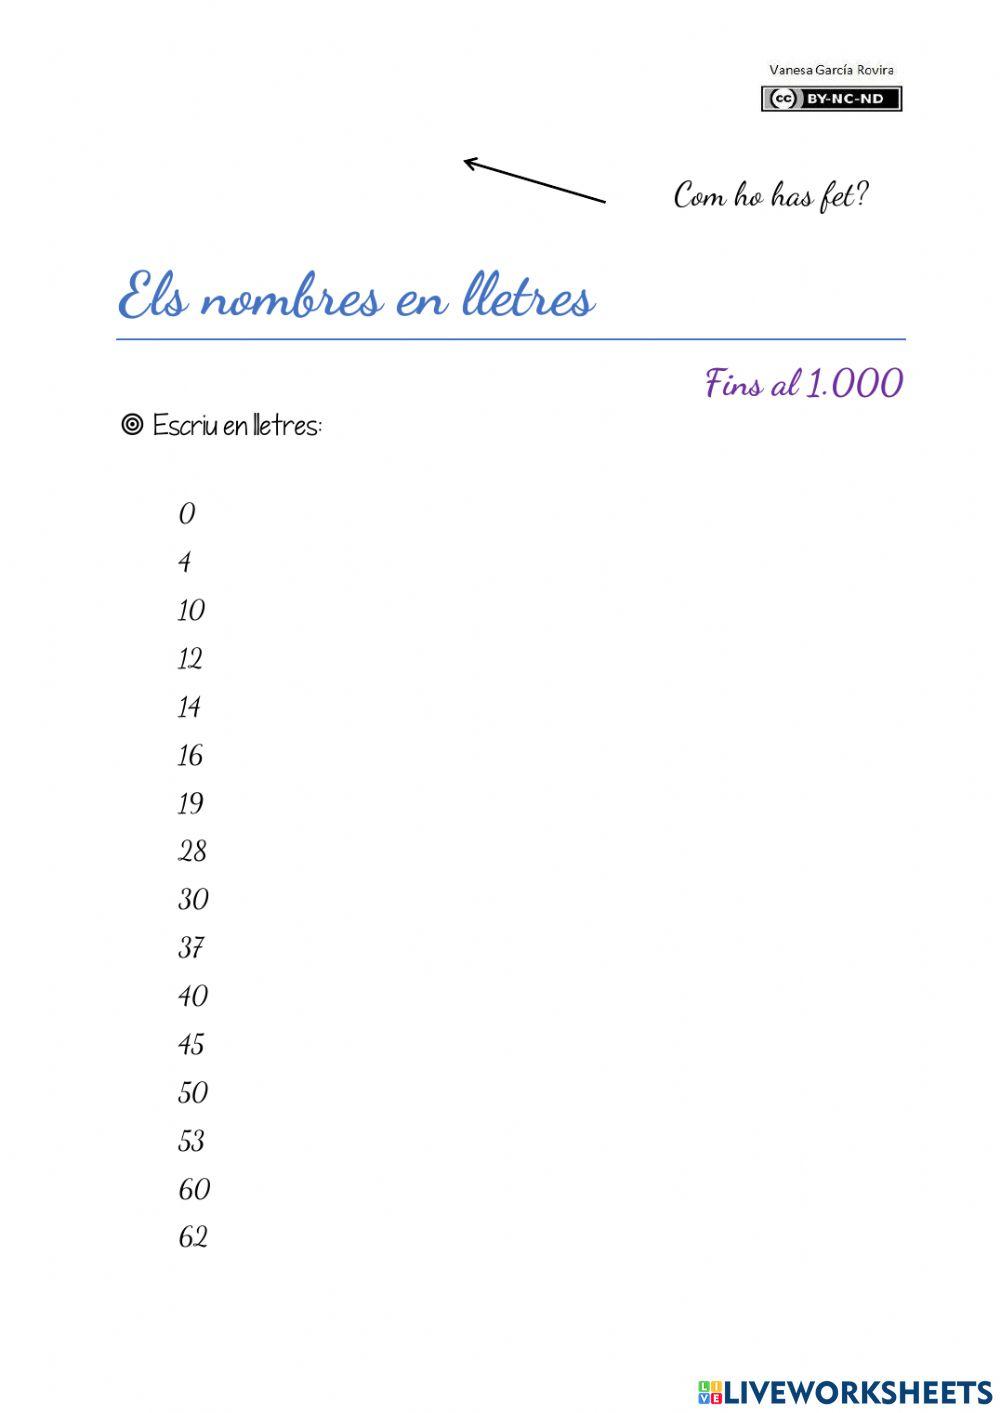 Els nombres en lletres (fins 1.000)